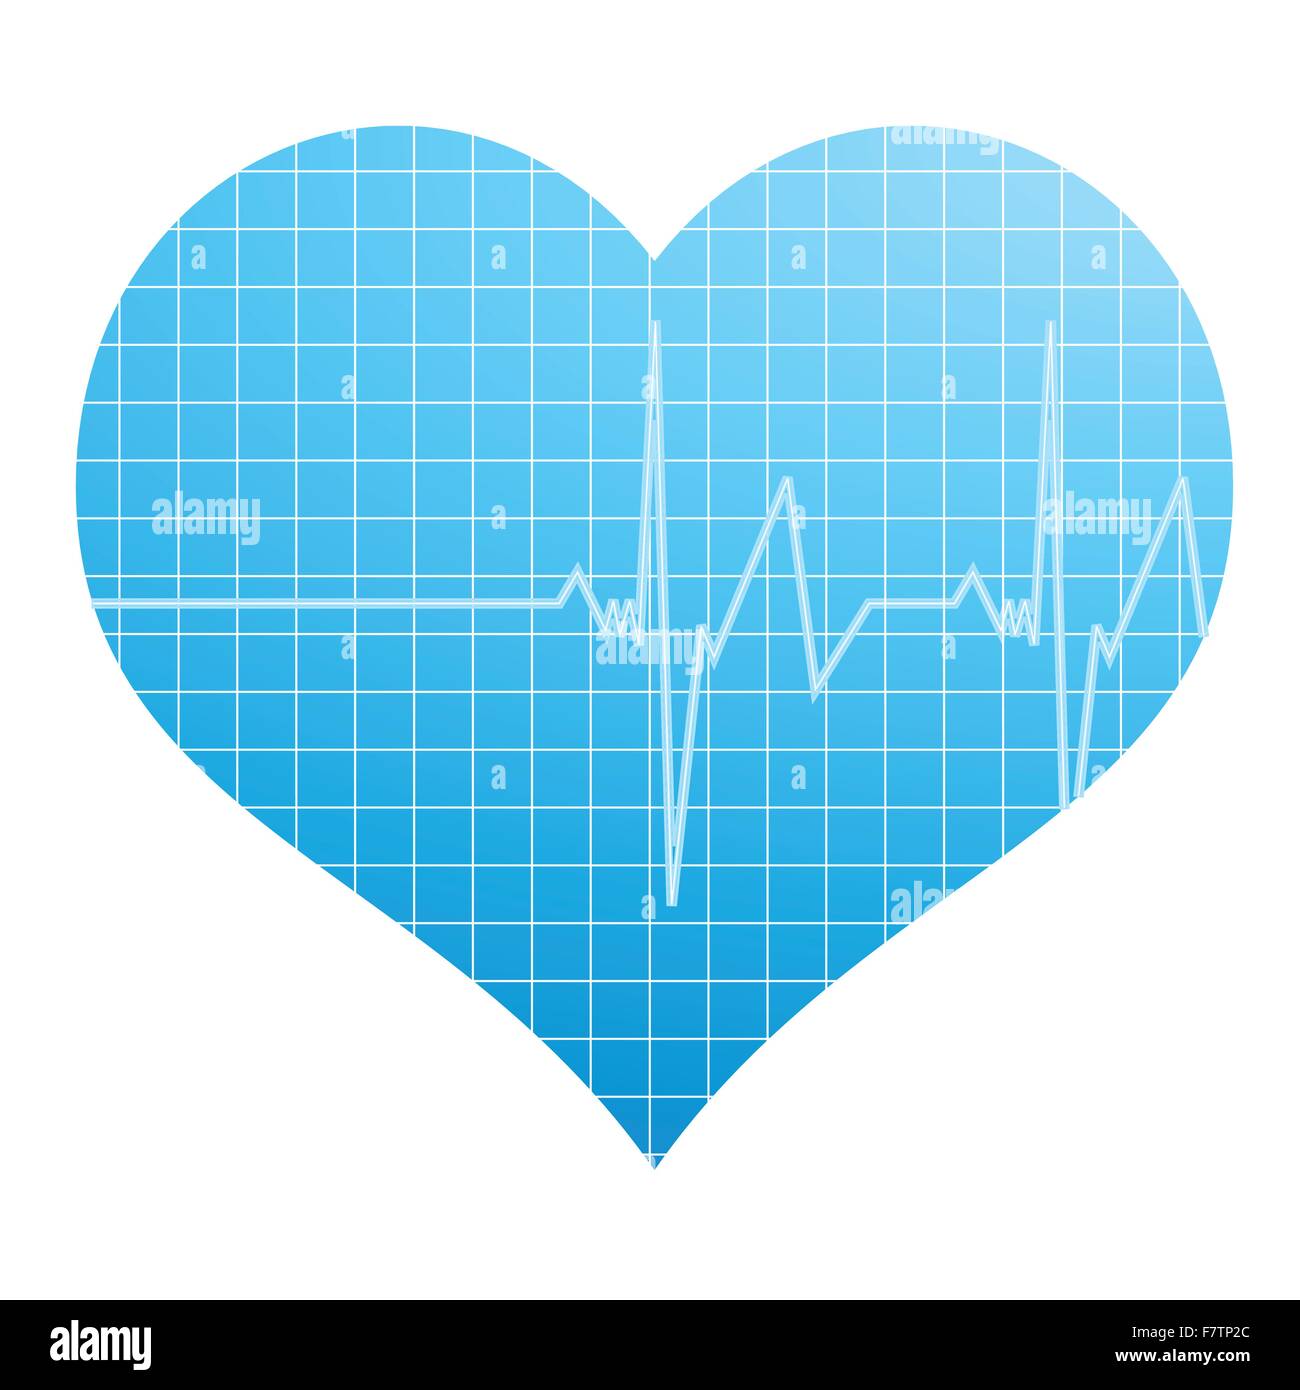 heart cardiogram Stock Vector